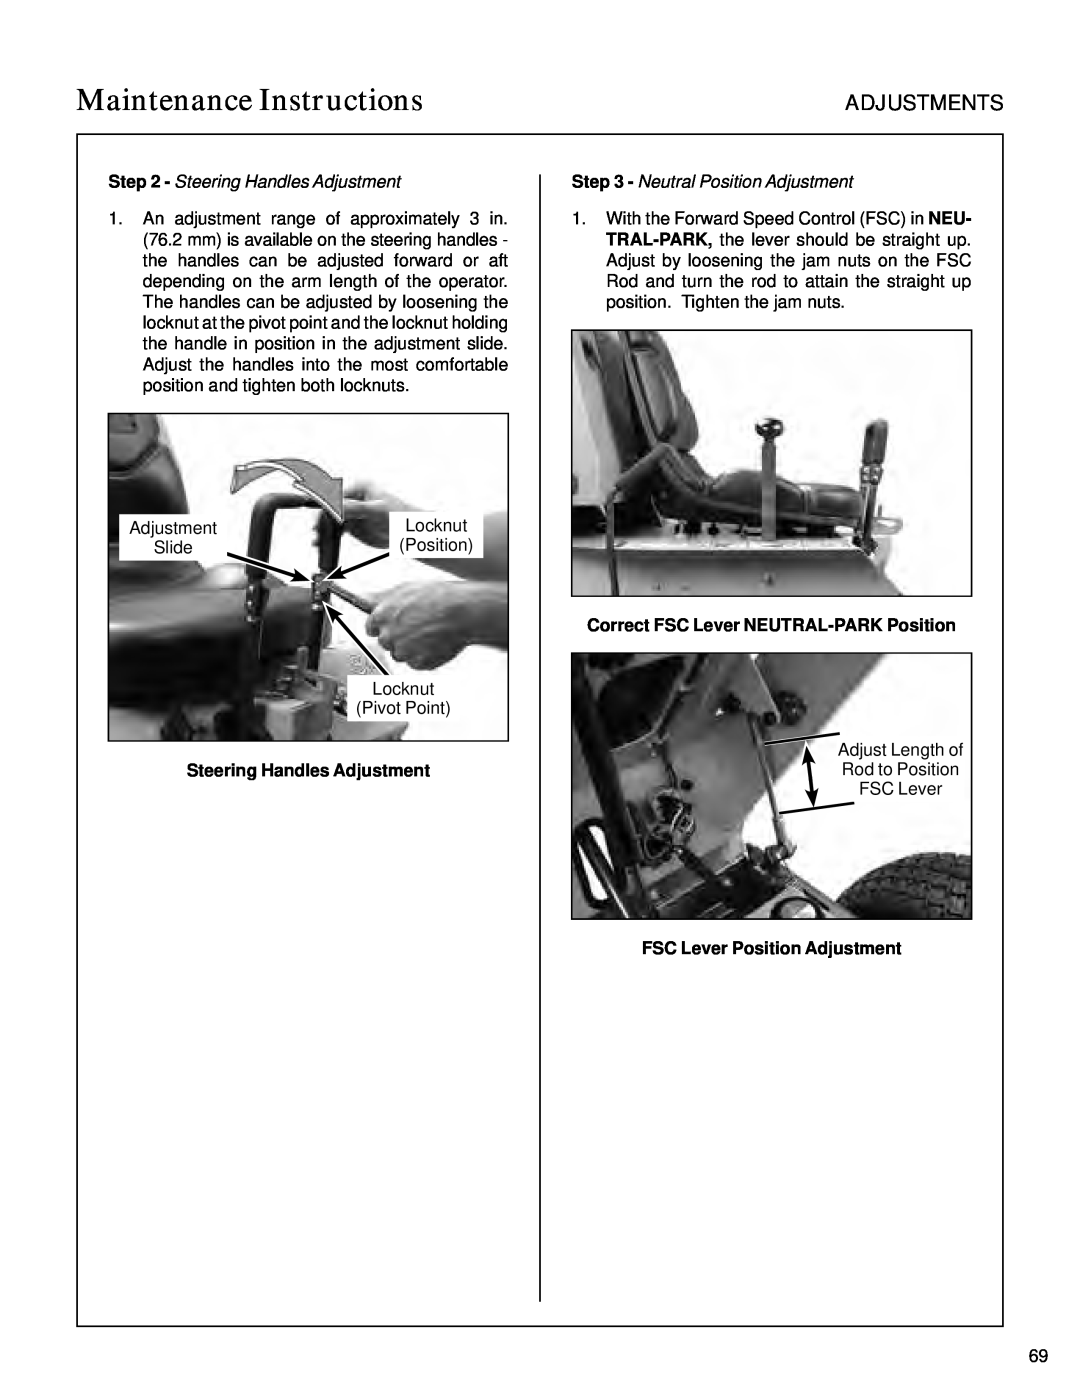 Walker S14 Steering Handles Adjustment, Neutral Position Adjustment, Correct FSC Lever NEUTRAL-PARKPosition, Adjustments 